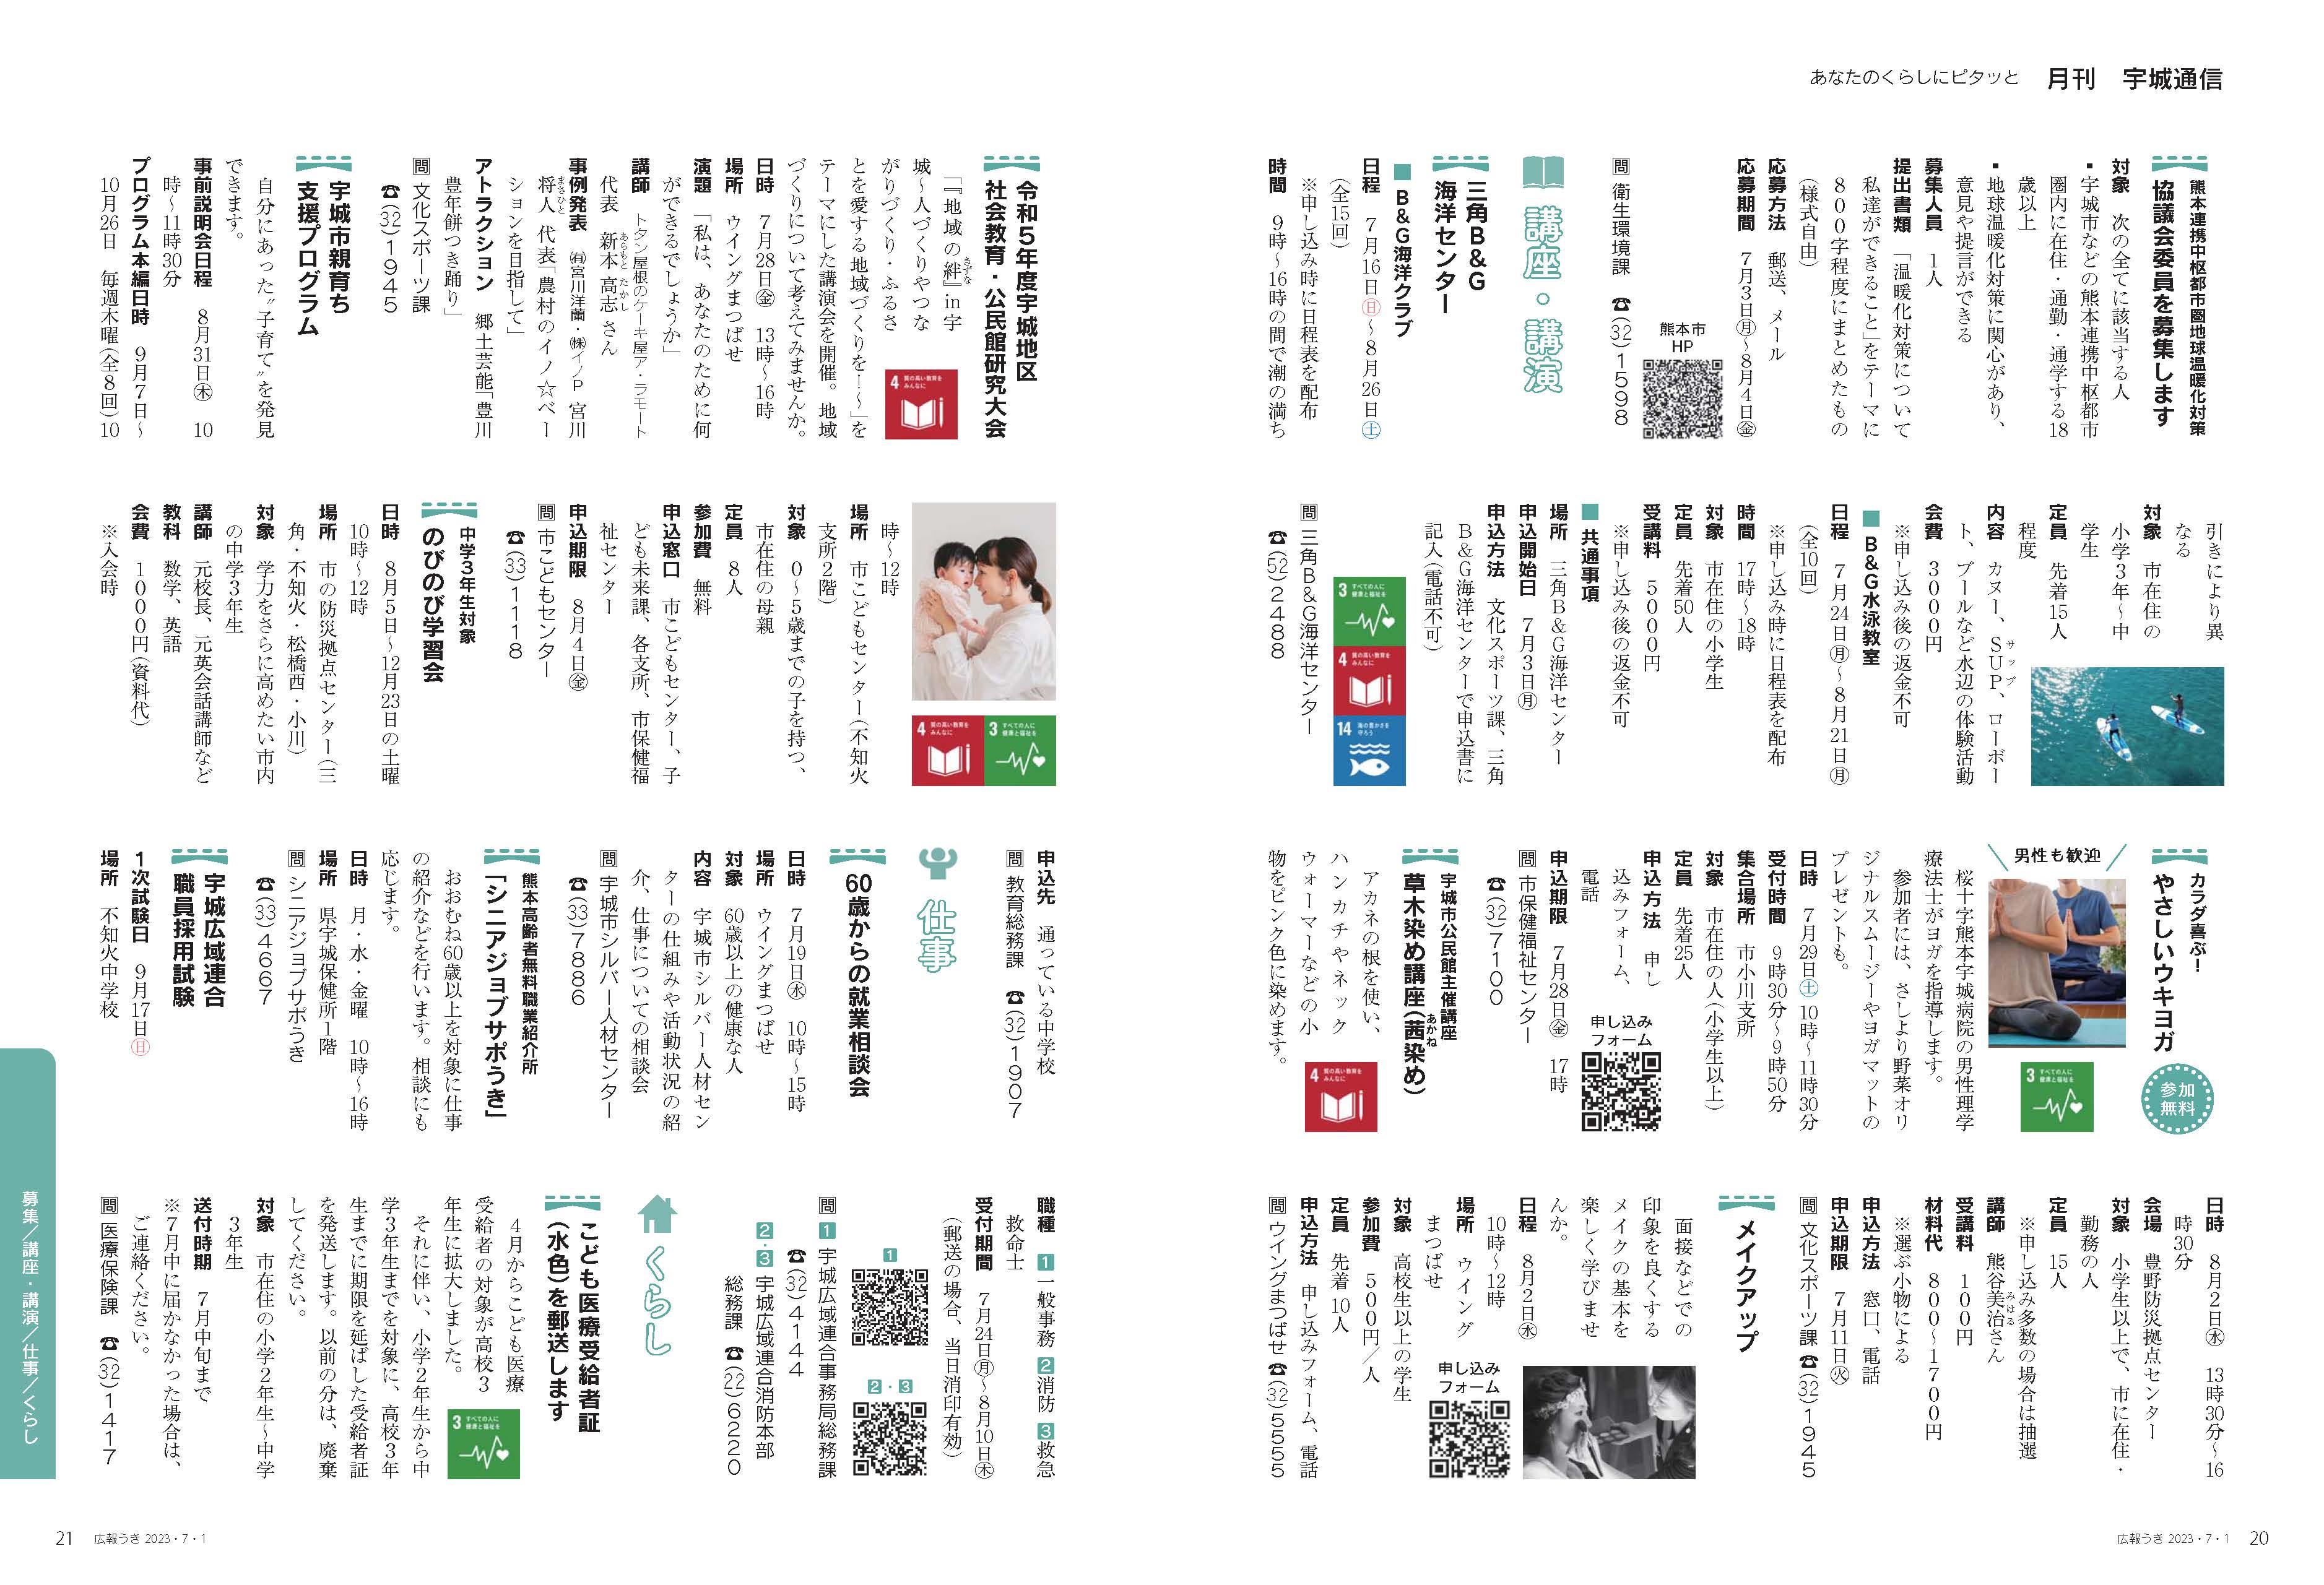 P20、P21  あなたのくらしにピタッと  月刊 宇城通信のページ画像、詳細はPDFファイルを参照ください。